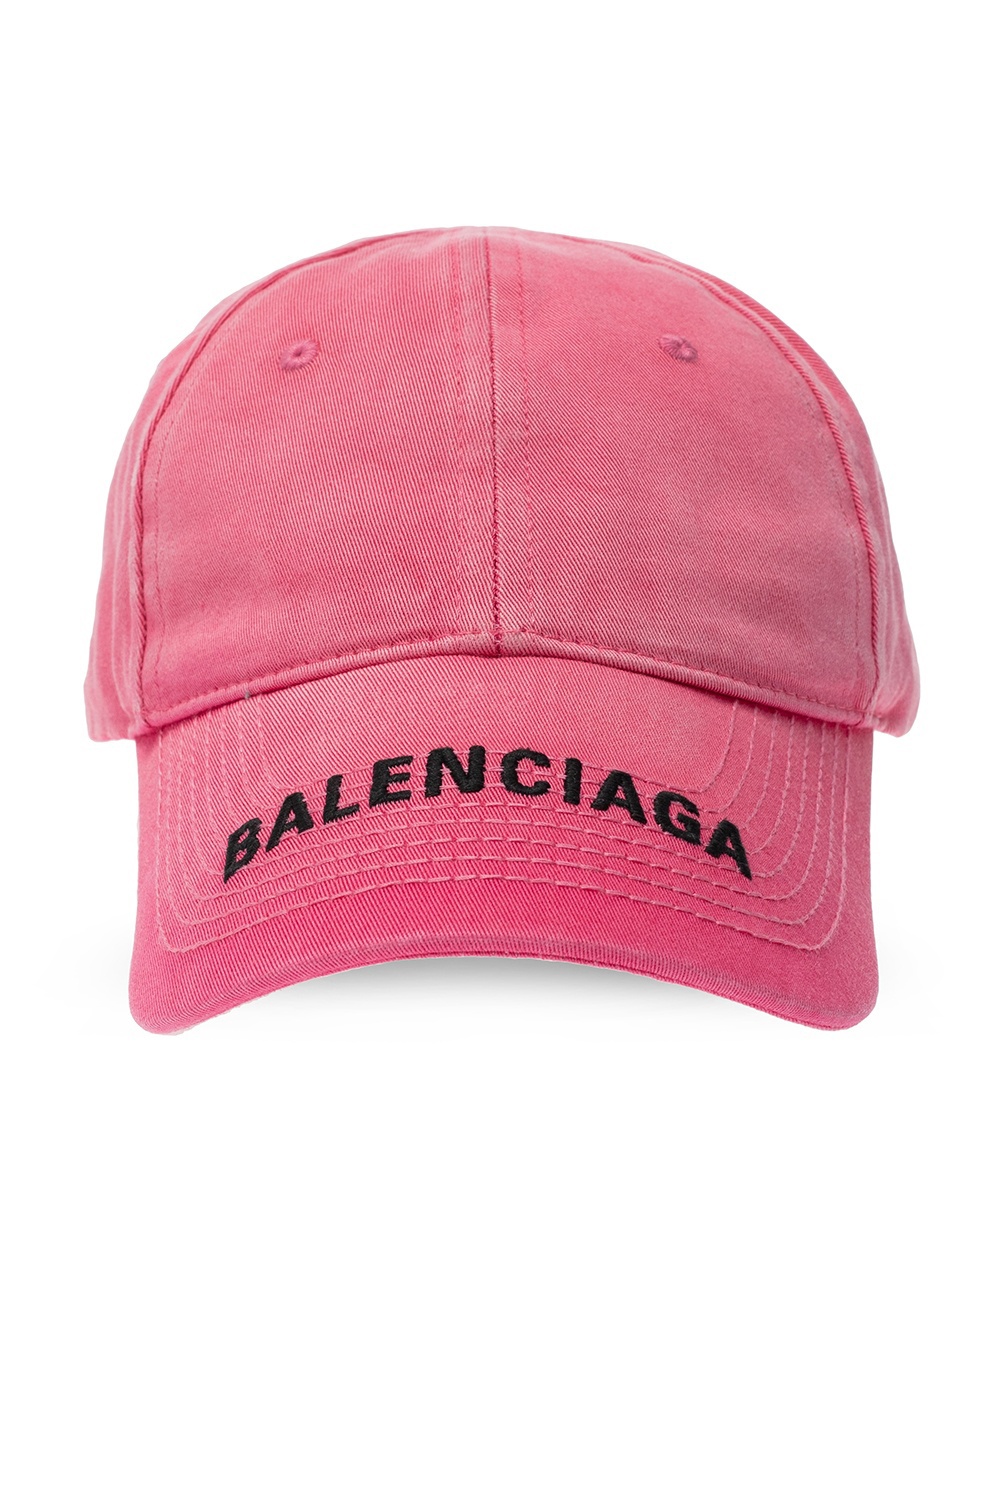 Balenciaga Paris Embroidered Logo Baseball Cap PinkWhite